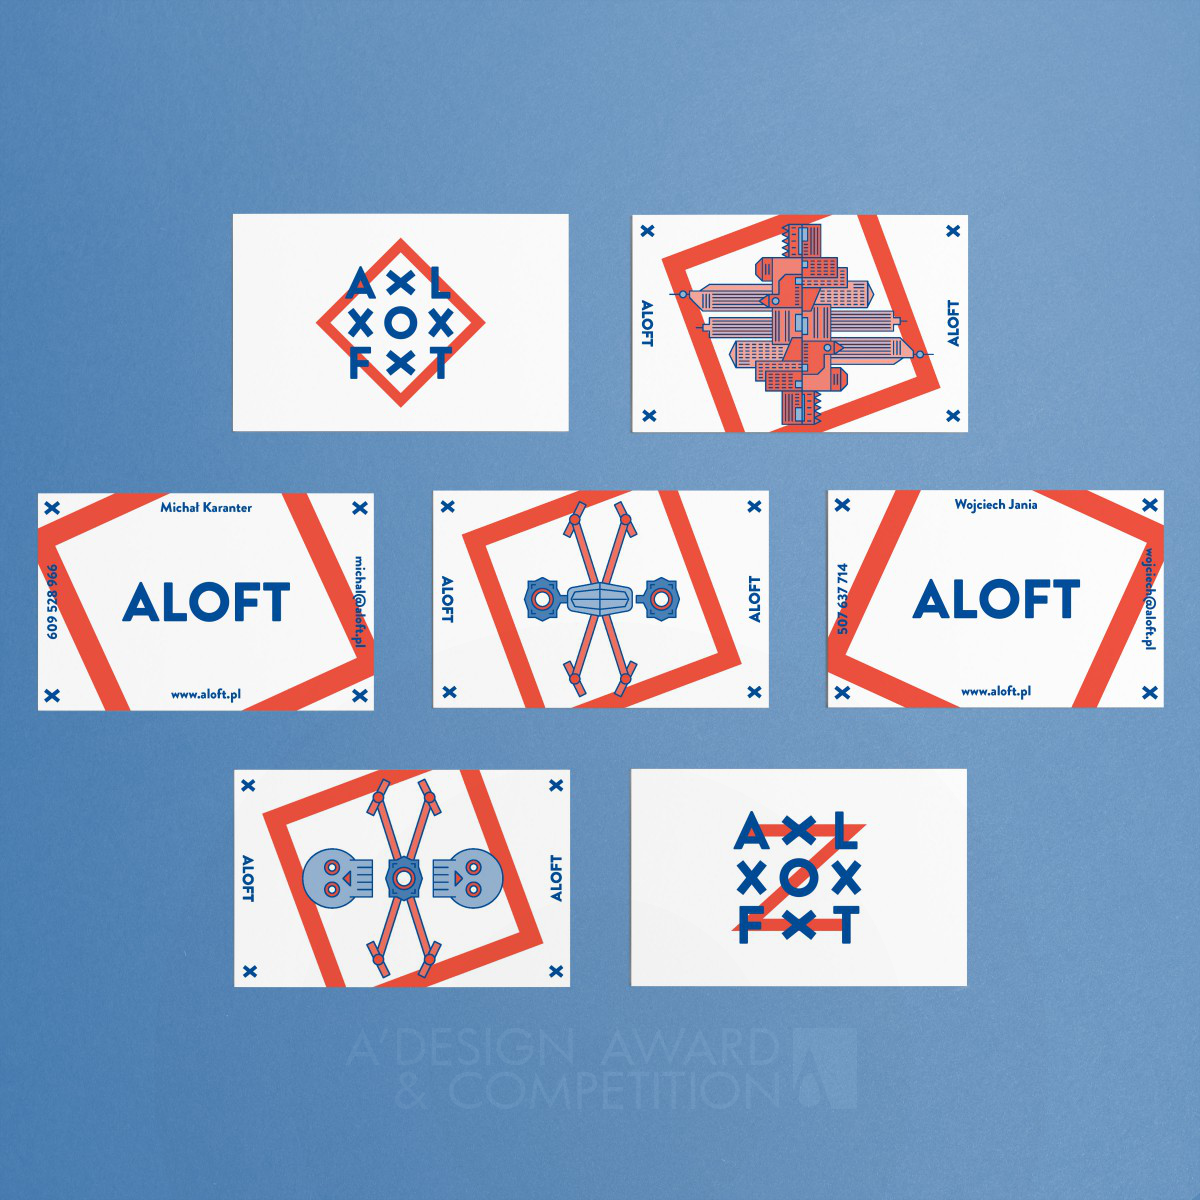 Aloft Corporate Identity by Michal Markiewicz